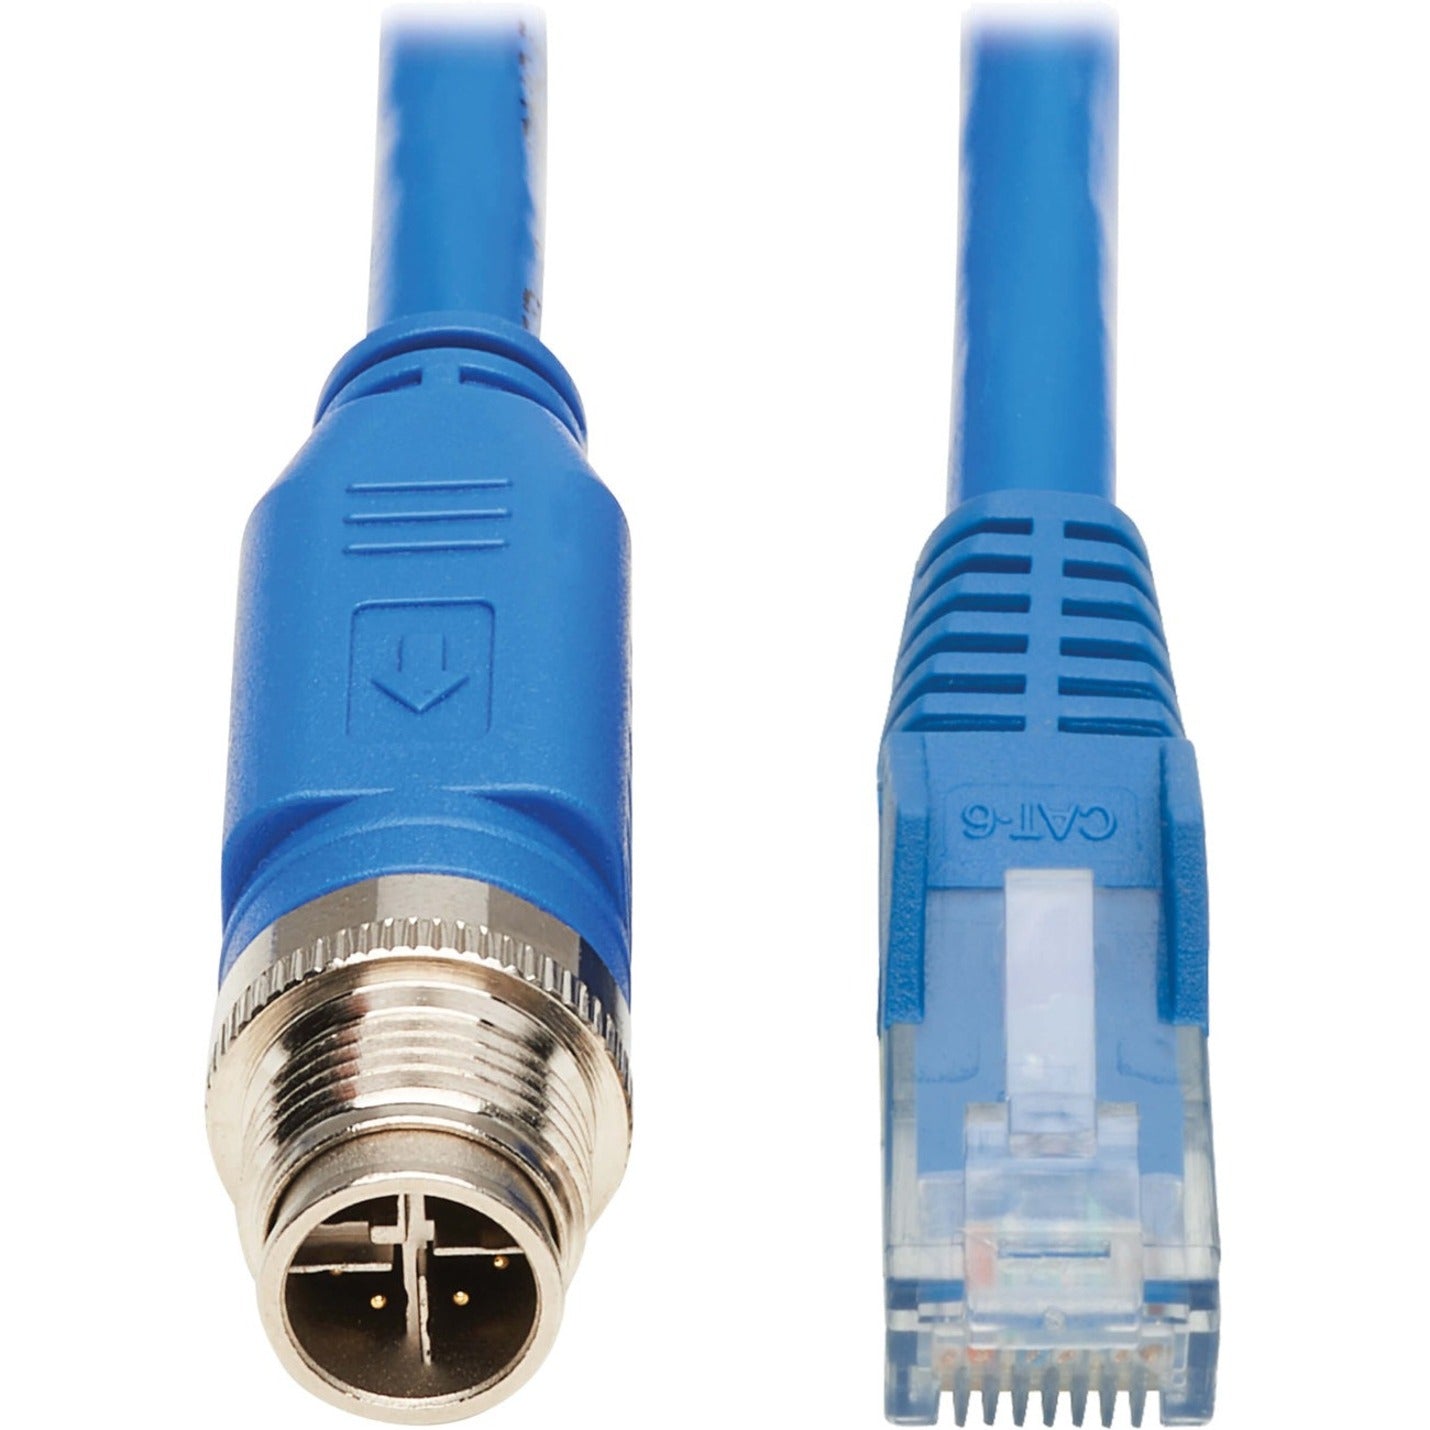 Tripp Lite NM12-602-10M-BL Cat.6 Network Cable, 32.81 ft, Blue, Heat Resistant, PoE, Vibration Resistant